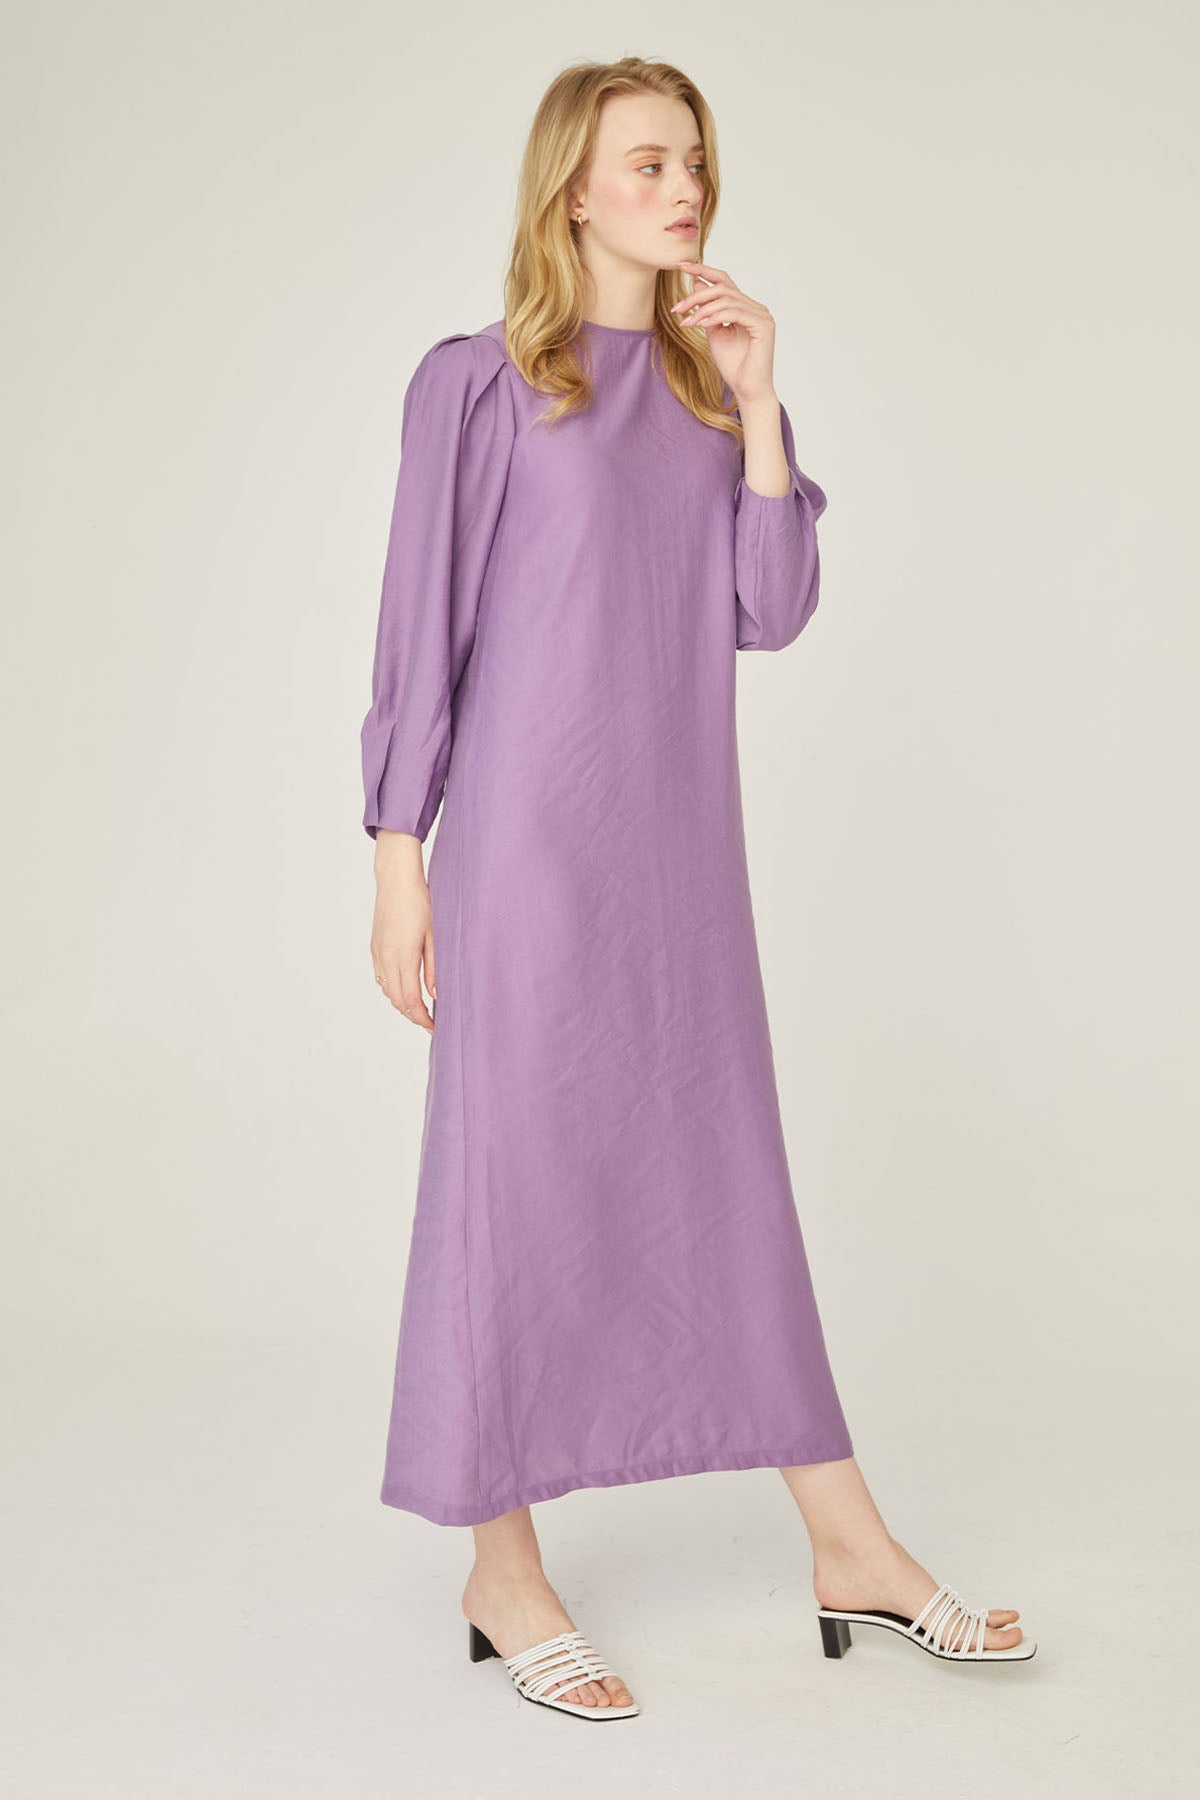 Linen dress-violet | High quality linen🌿